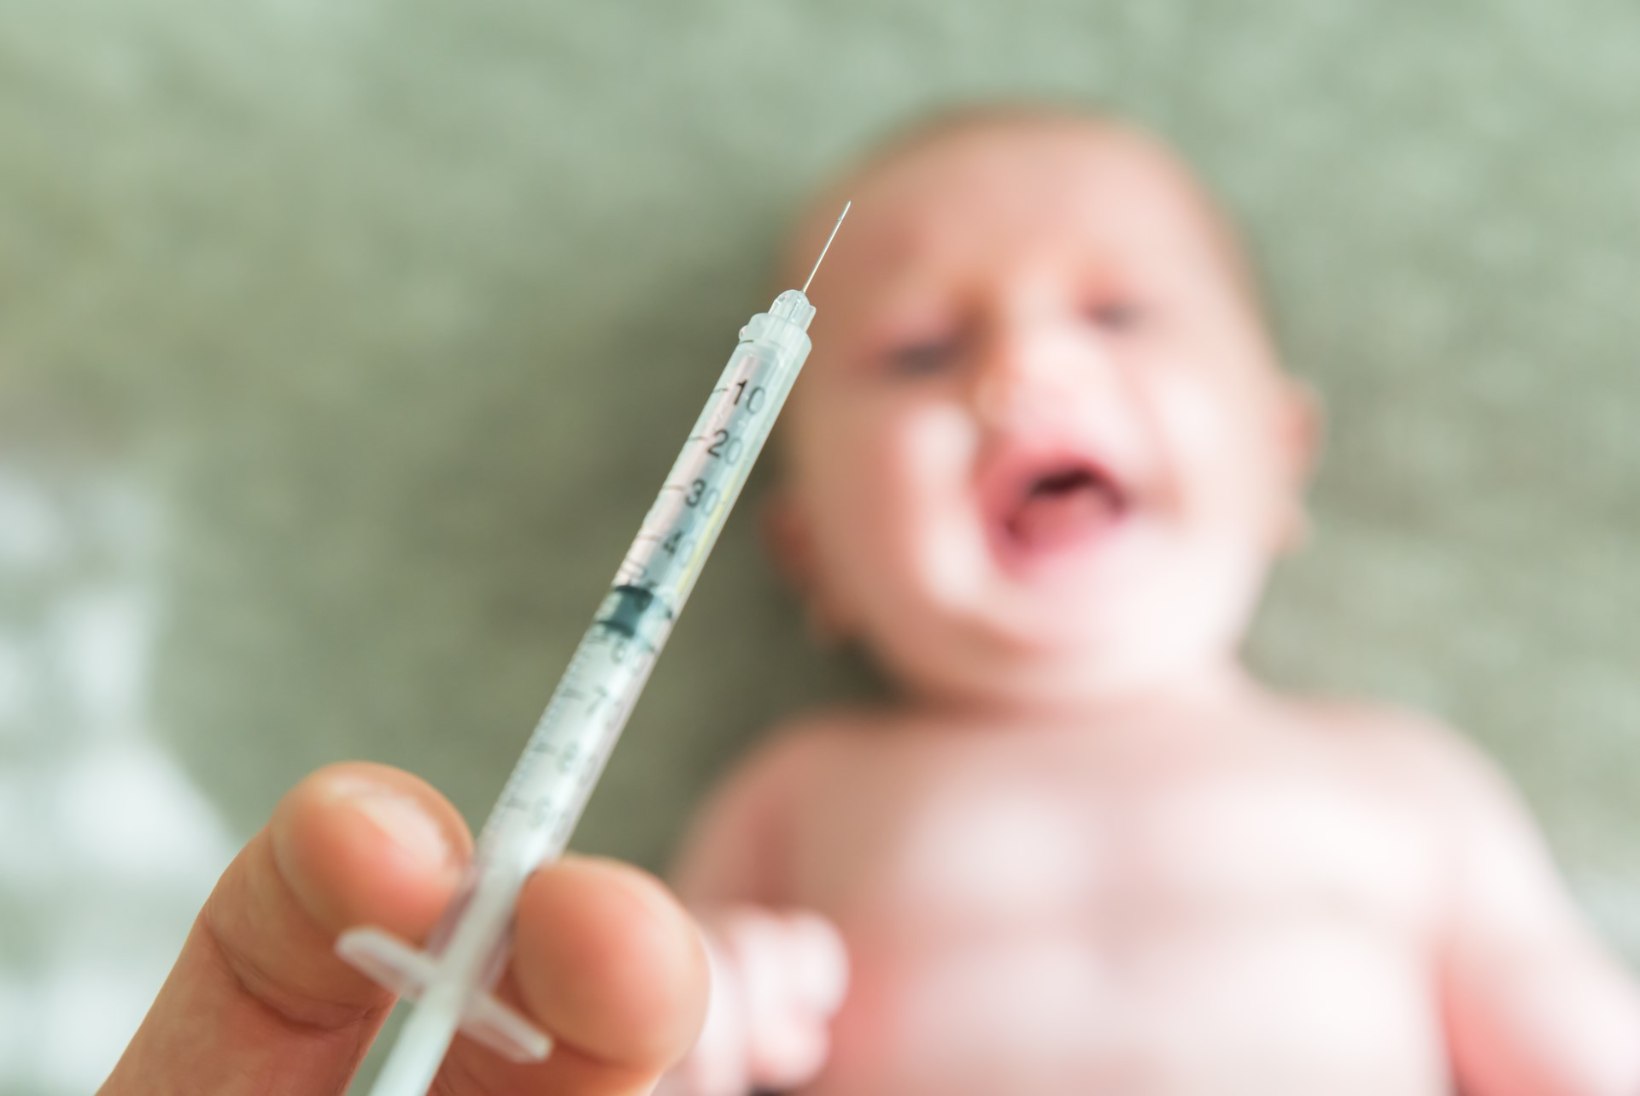 Rotaviiruse vastu vaktsineerimine vähendab soolenakkuste tõttu arstilt abi otsimise vajadust